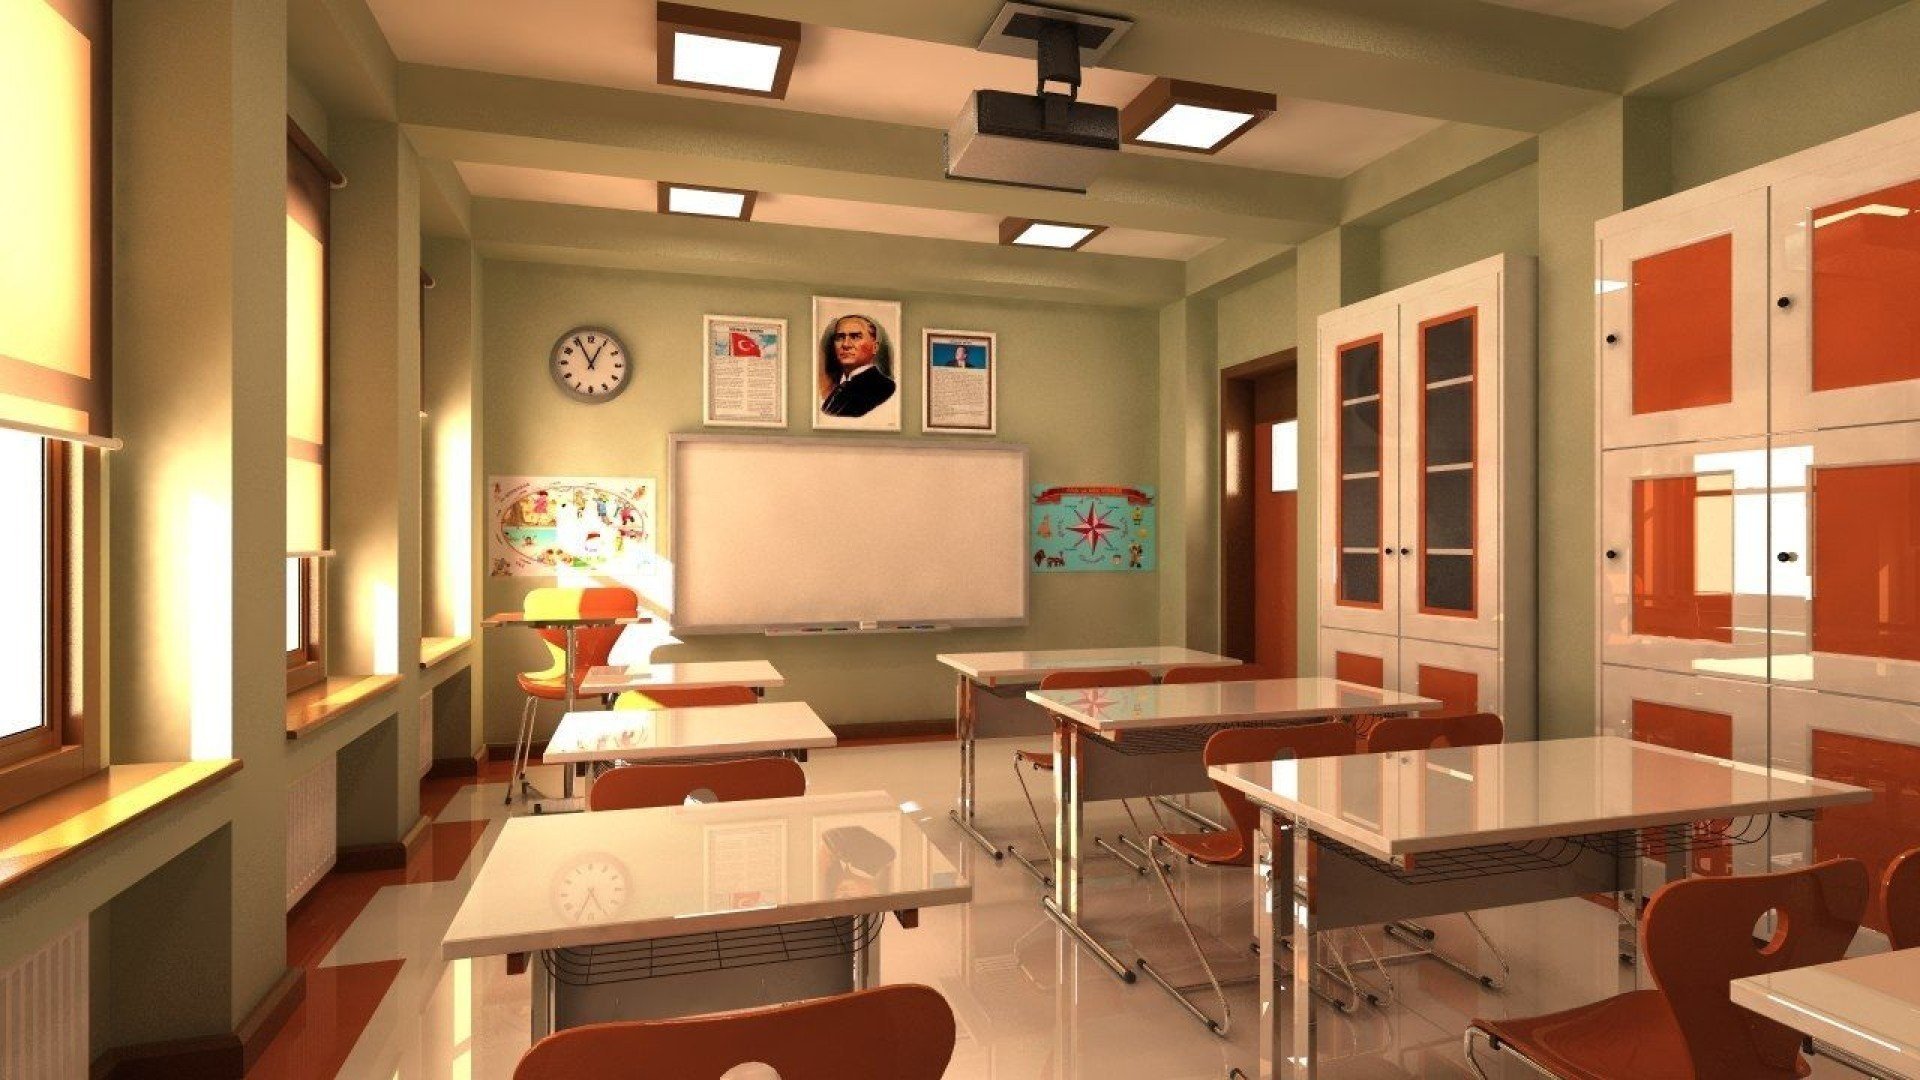 Идеальный 5 класс. Интерьер класса. Современный кабинет в школе. Интерьер учебного класса. Интерьер классной комнаты в школе.